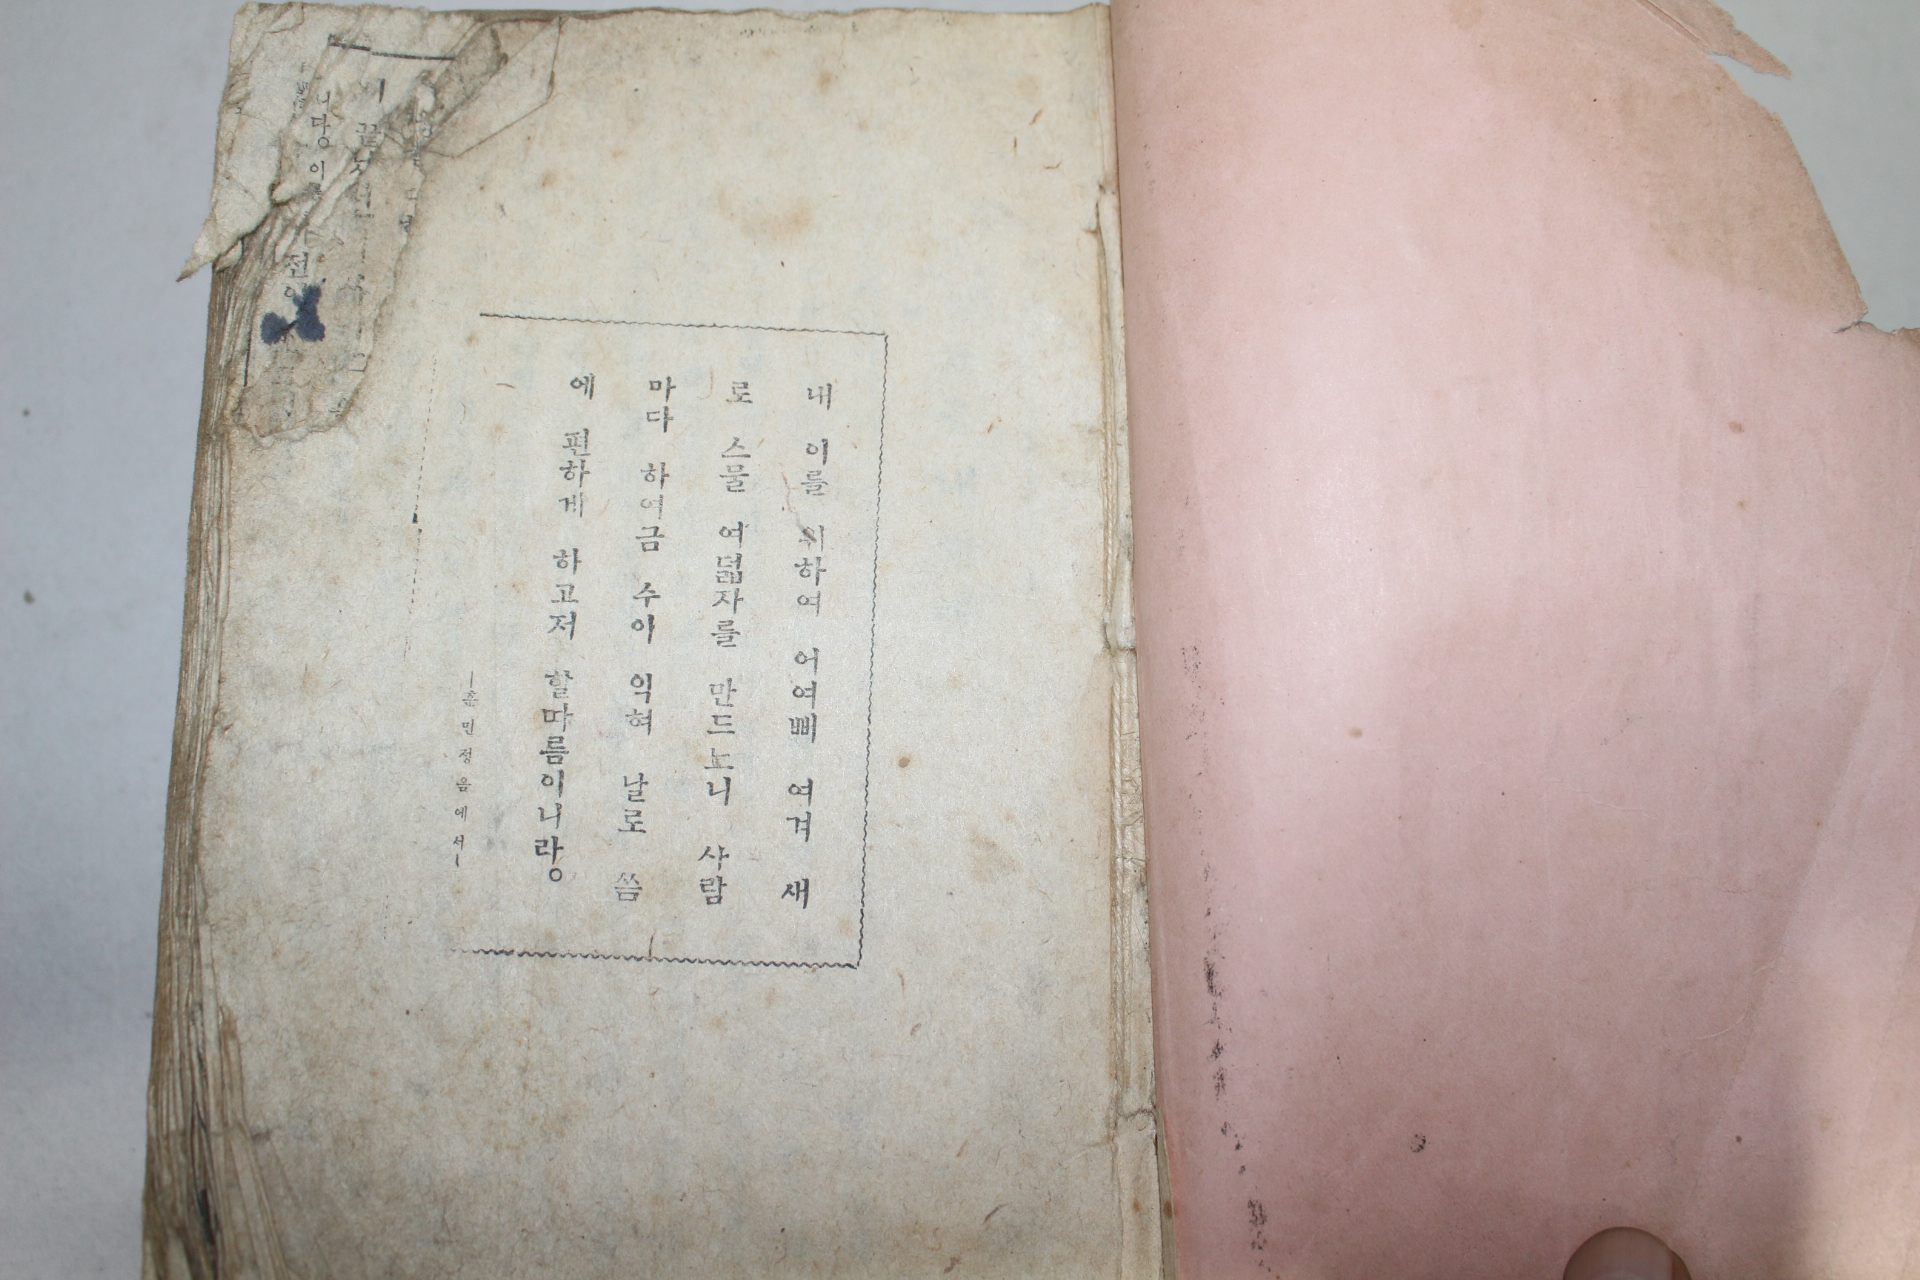 1946년 문세영(文世榮) 수정증보 조선어사전((修正增補)朝鮮語辭典 1책완질